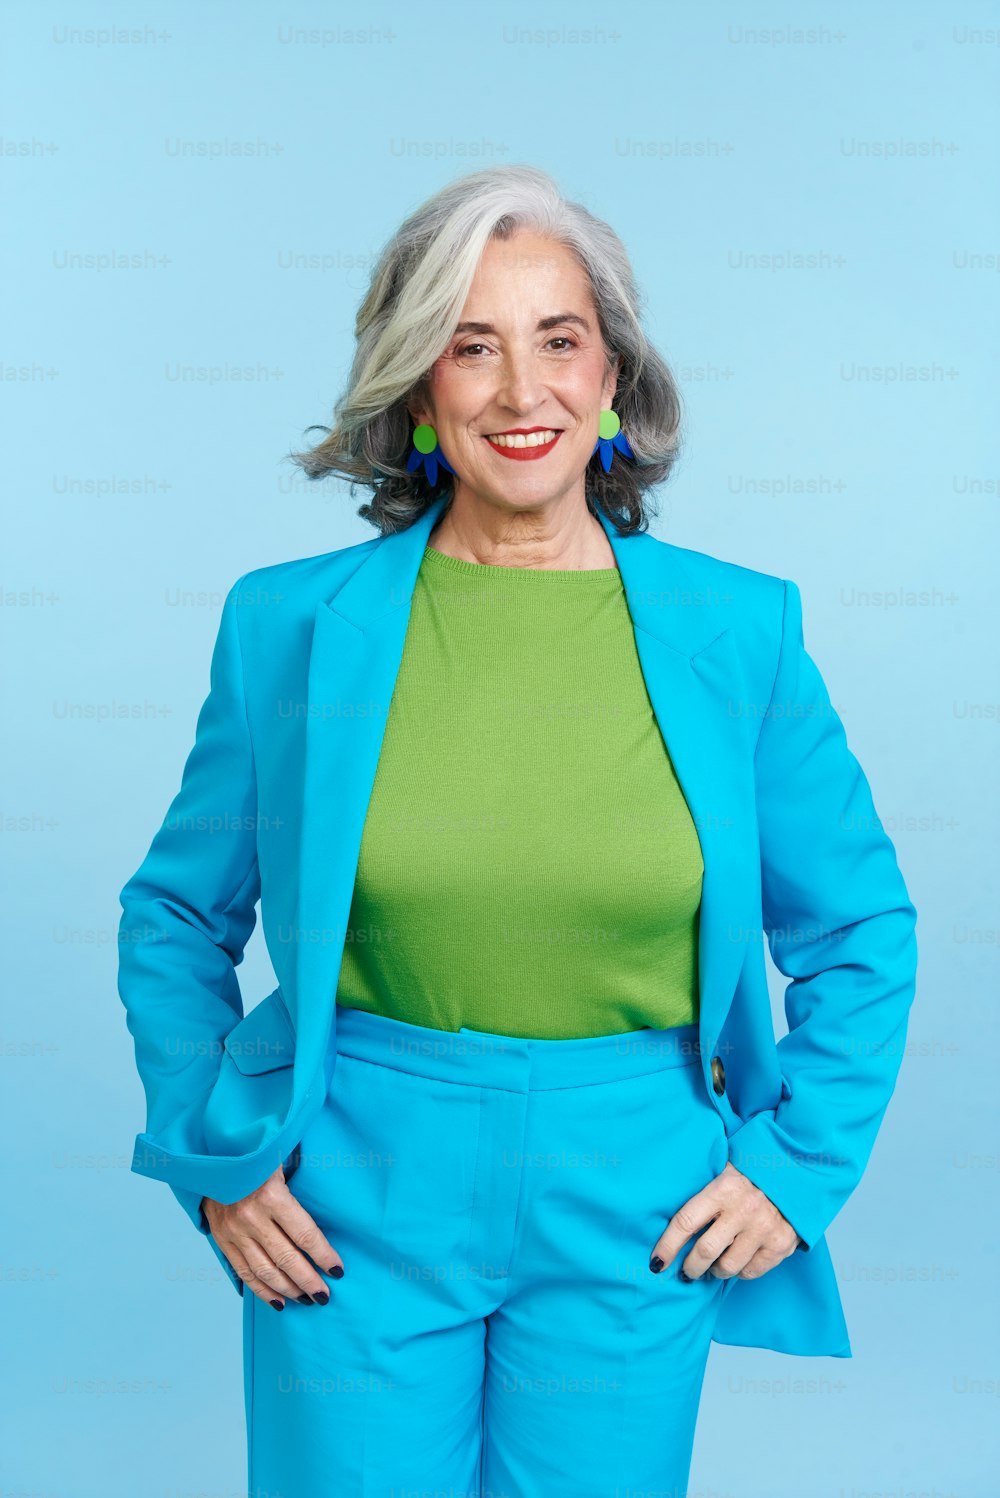 Une femme en costume bleu posant pour une photo